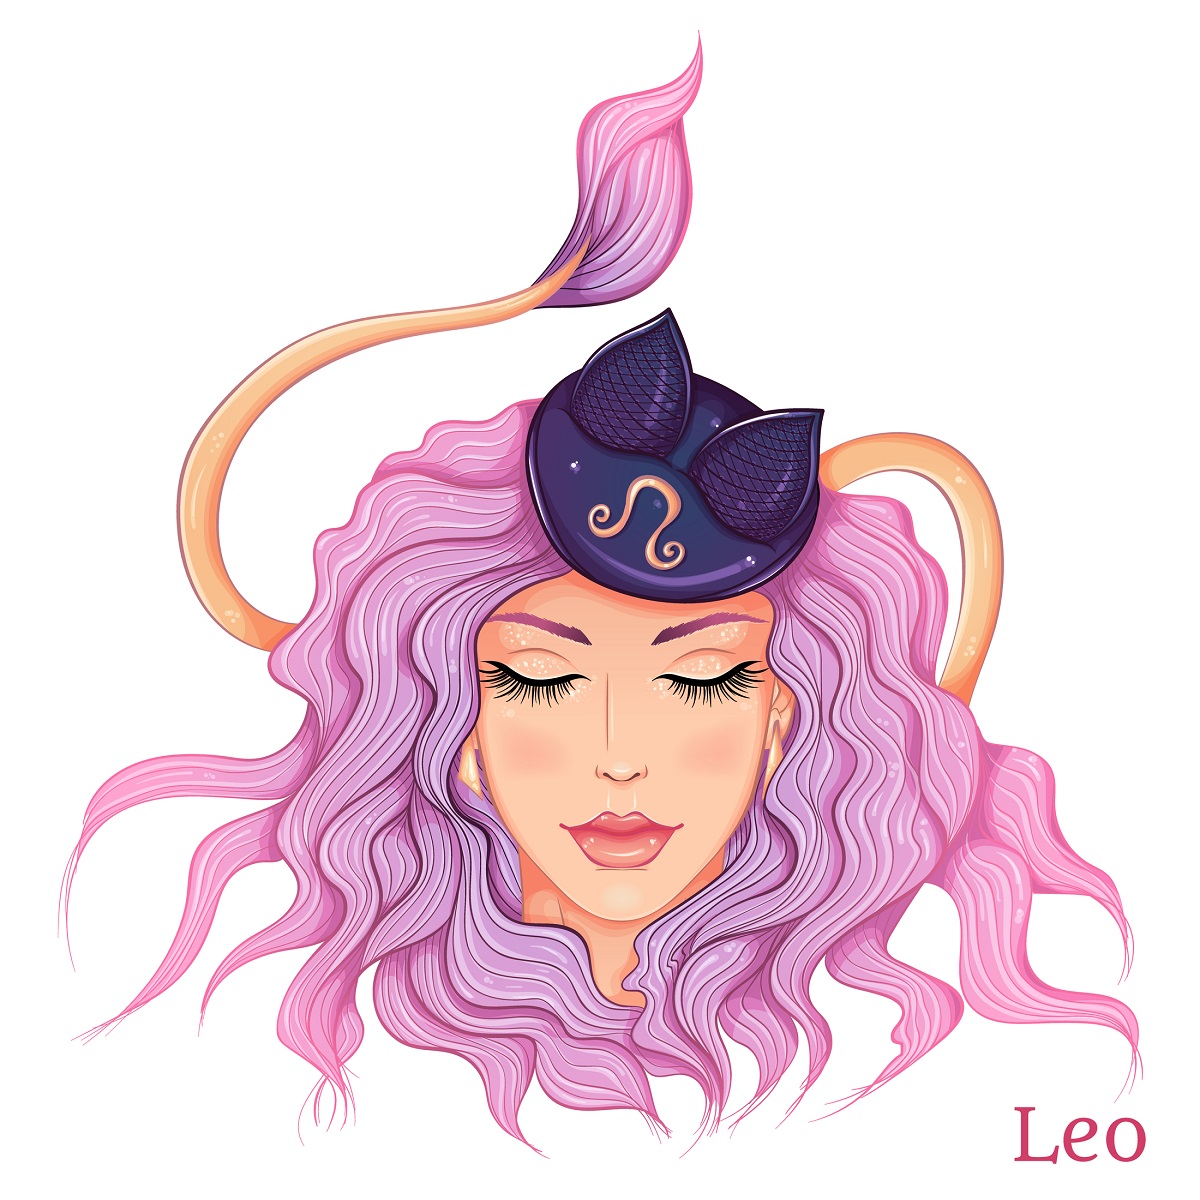 O femeie frumoasă cu părul lung și mov, care poartă o pălăriuță pe cap și reprezintă zodia leului